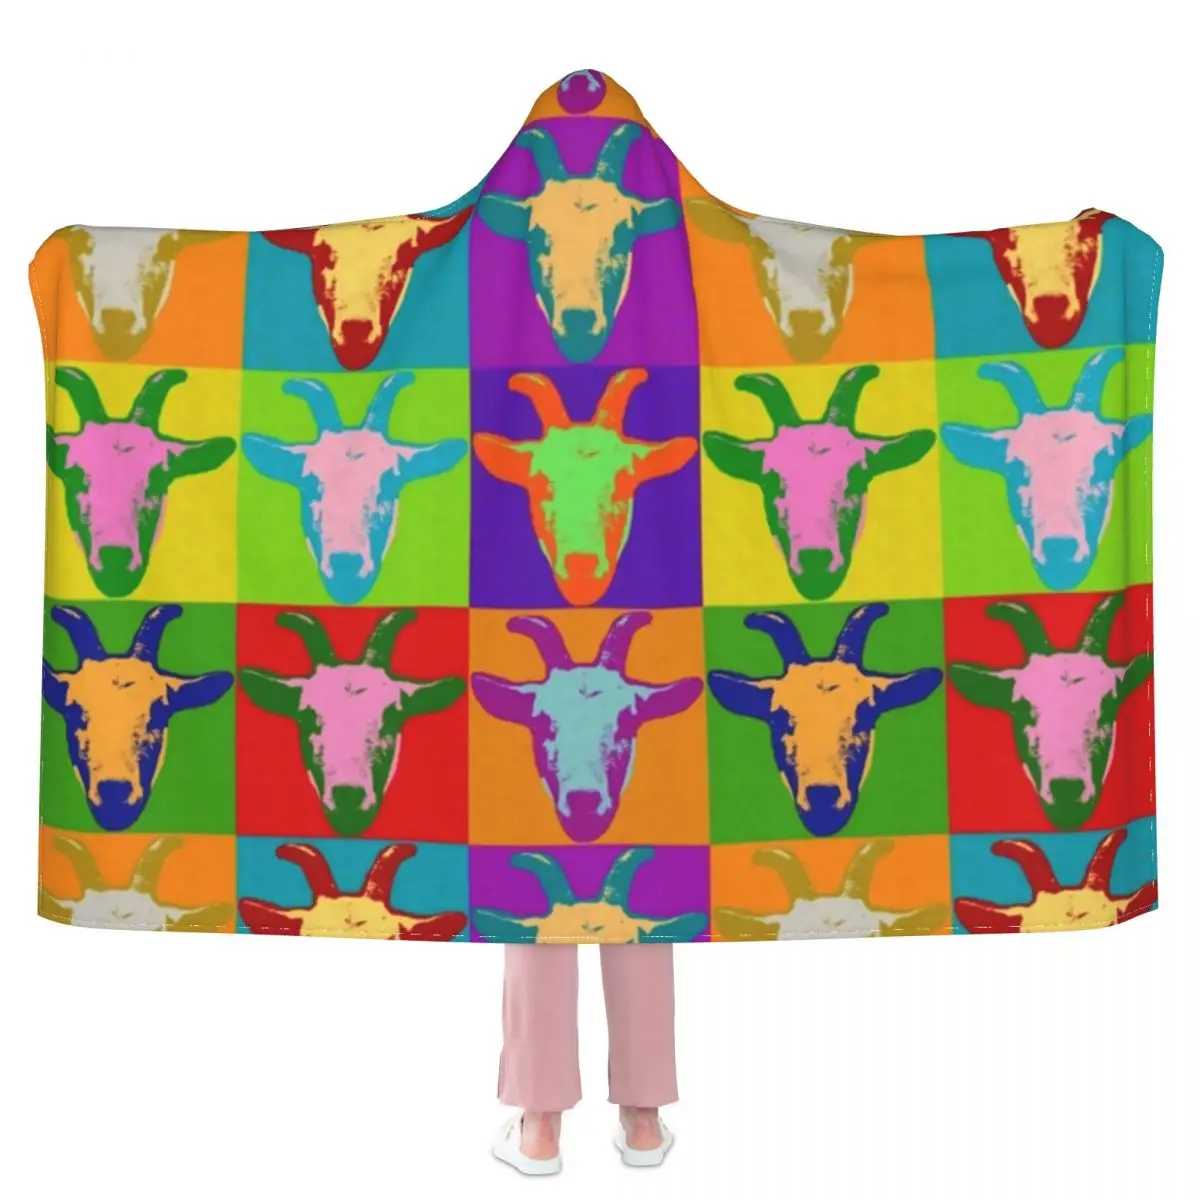 

Одеяло с принтом животных на ферме, коза, поп-арт, дешевое забавное покрывало с капюшоном, флисовое мягкое одеяло